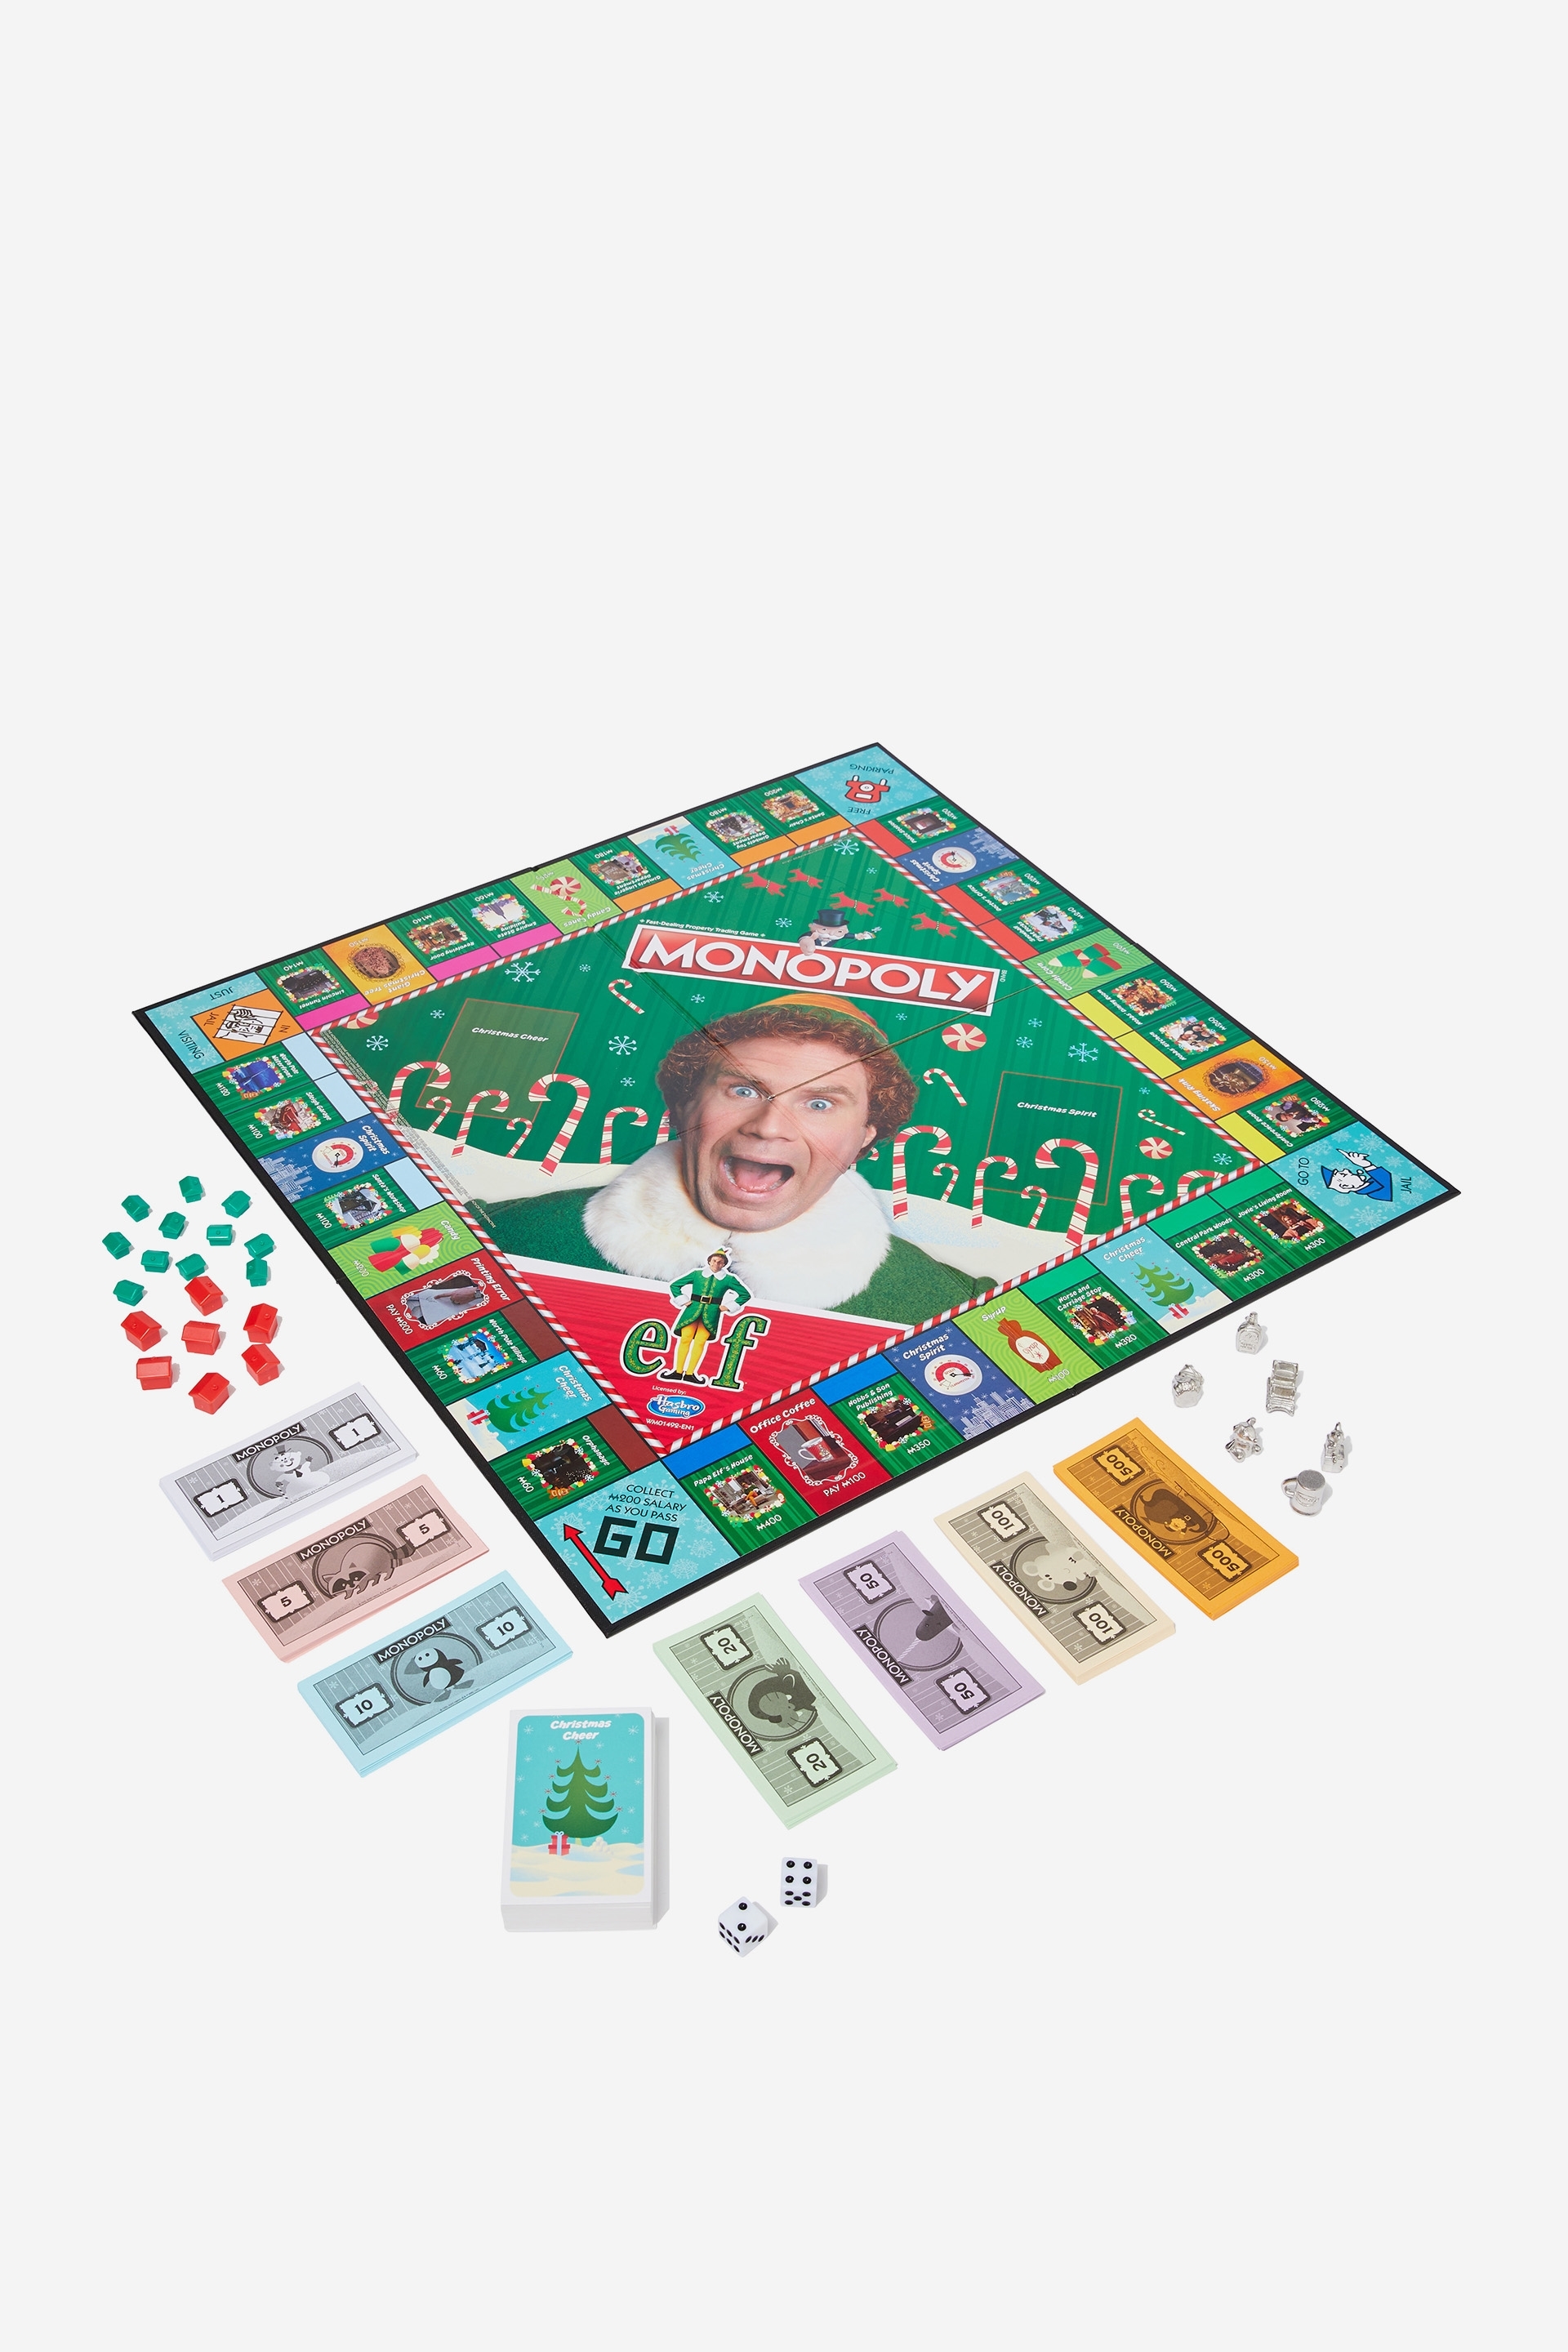 elf monopoly